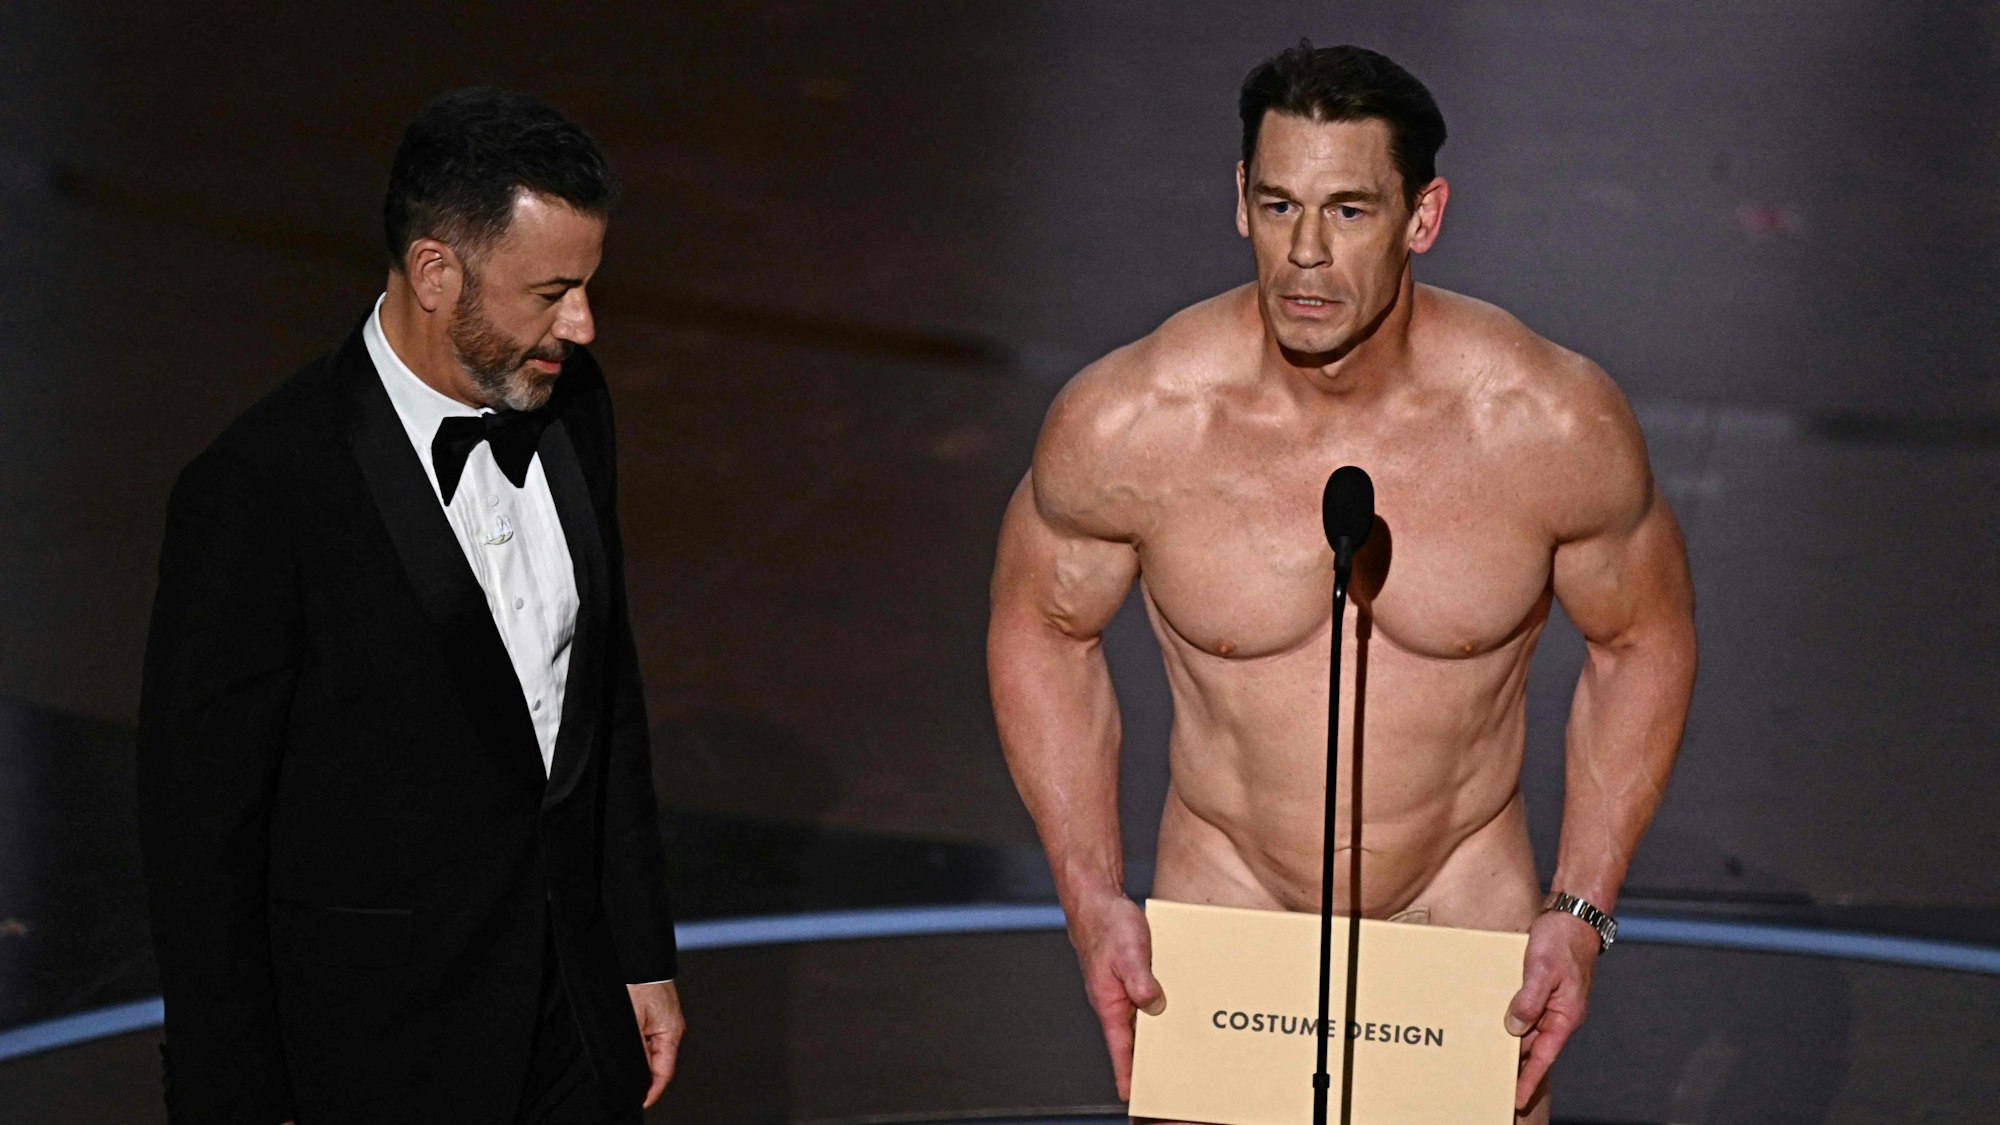 TV-Moderator Jimmy Kimmel (l) sieht zu, wie der Schauspieler und Wrestler John Cena (r) den Preis für das beste Kostümdesign während der 96. jährlichen Oscar-Verleihung auf der Bühne präsentiert.